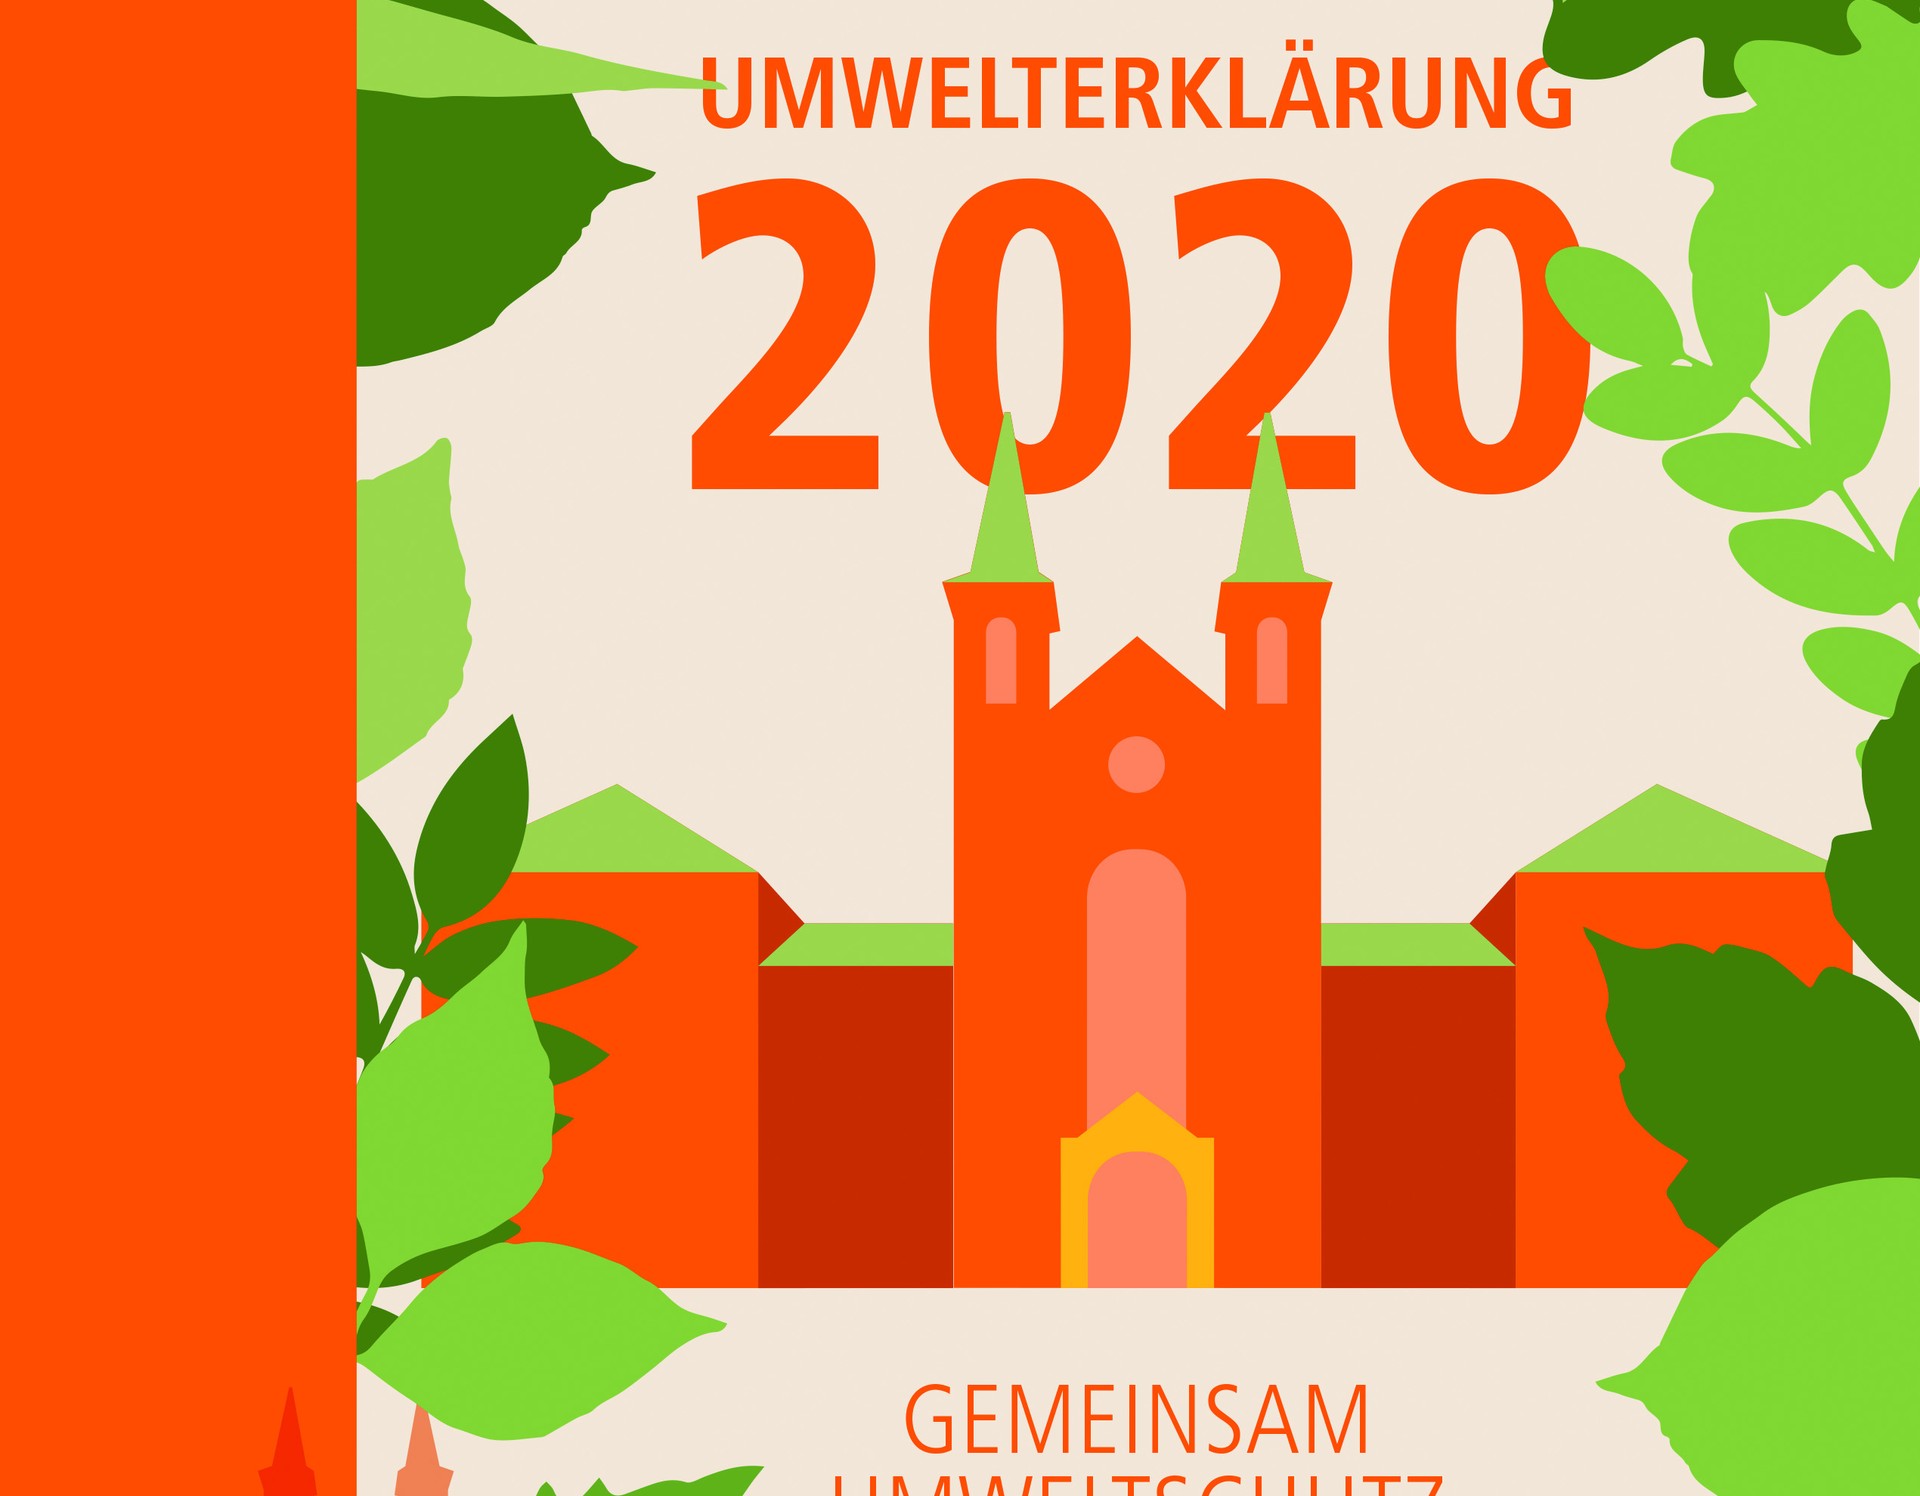 Titelseite der Umwelterklärung 2020 mit grünen und orangefarbenen Grafiken der alten Klinikgebäudes und Pflanzenblättern